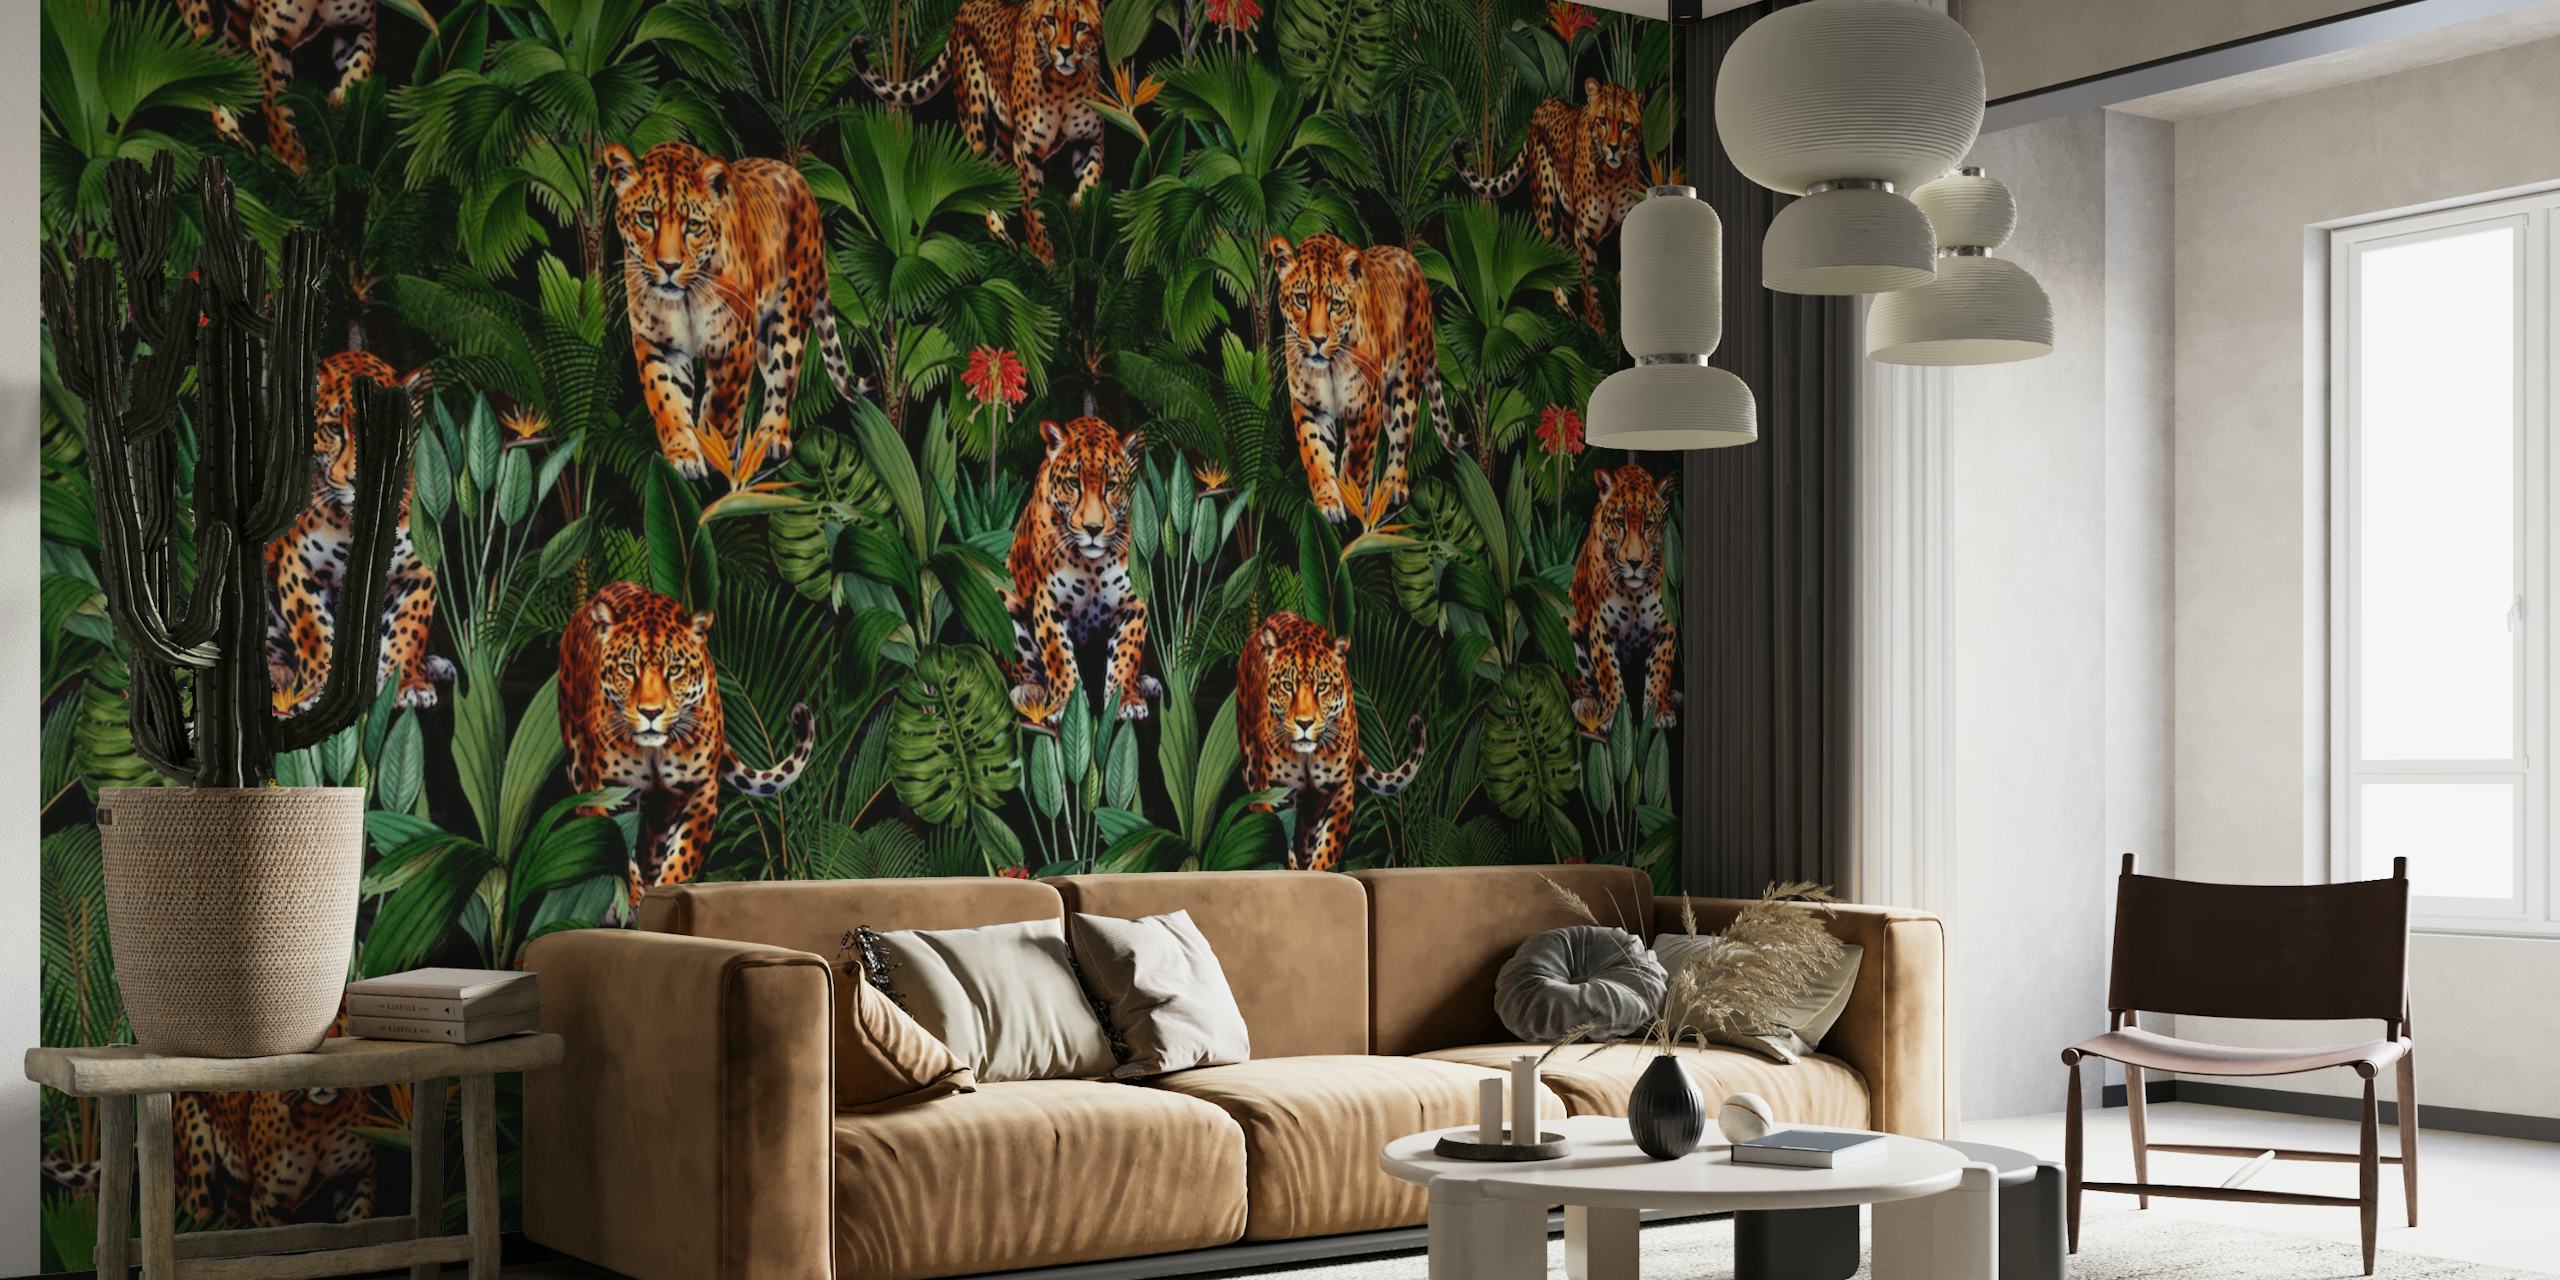 Een weelderige jungle muurschildering met tijgers verborgen tussen groen gebladerte in een nachtelijke omgeving.